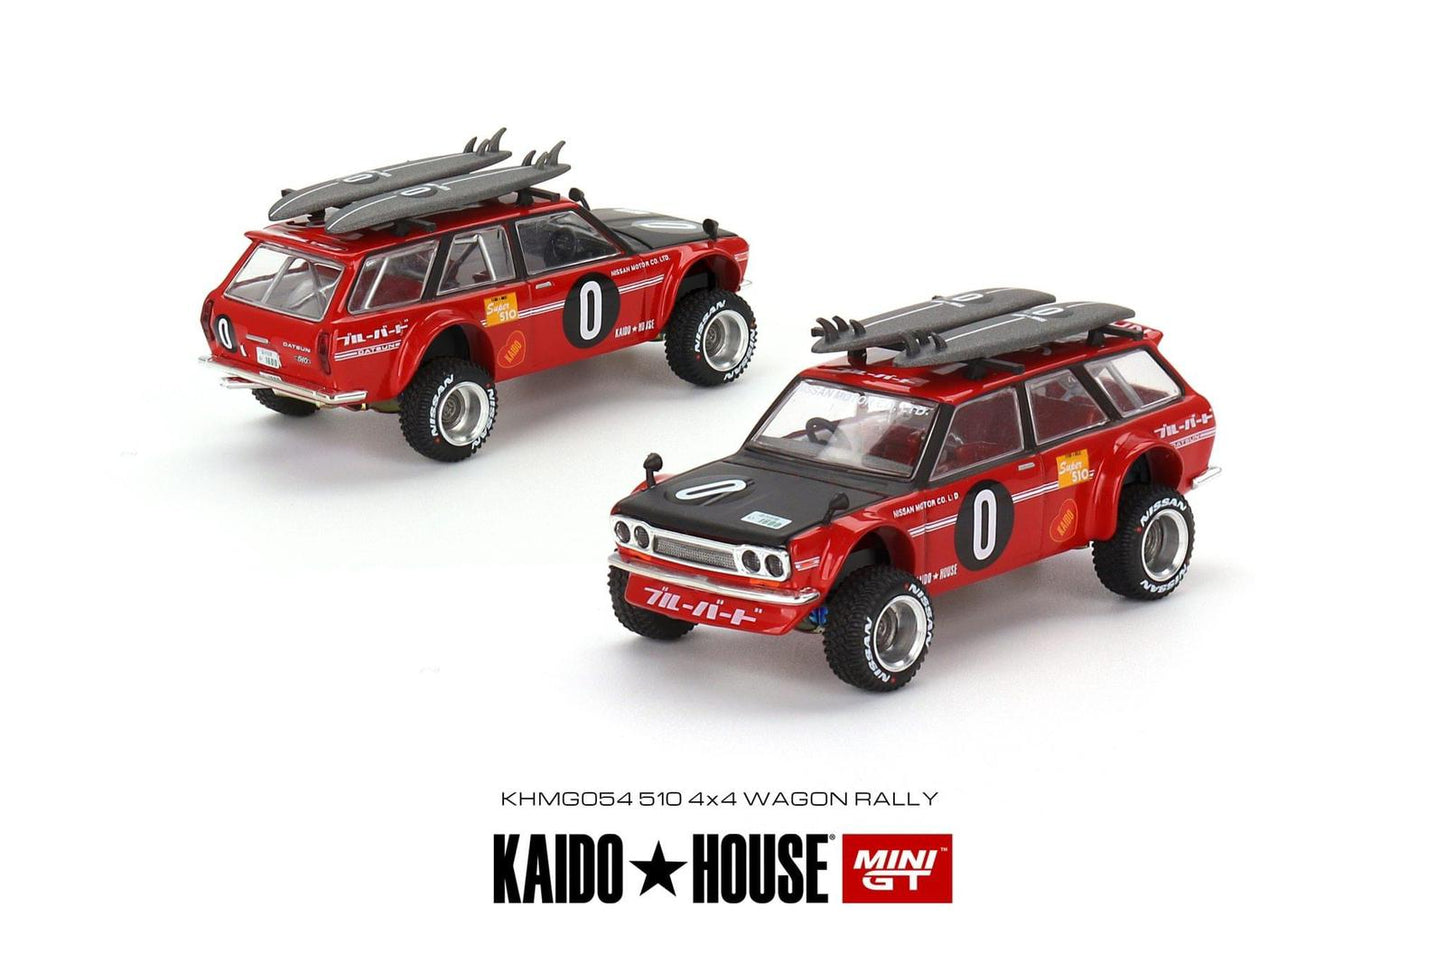 Mini GT x Kaido House 1:64 #54 Datsun 510 4X4 Wagon